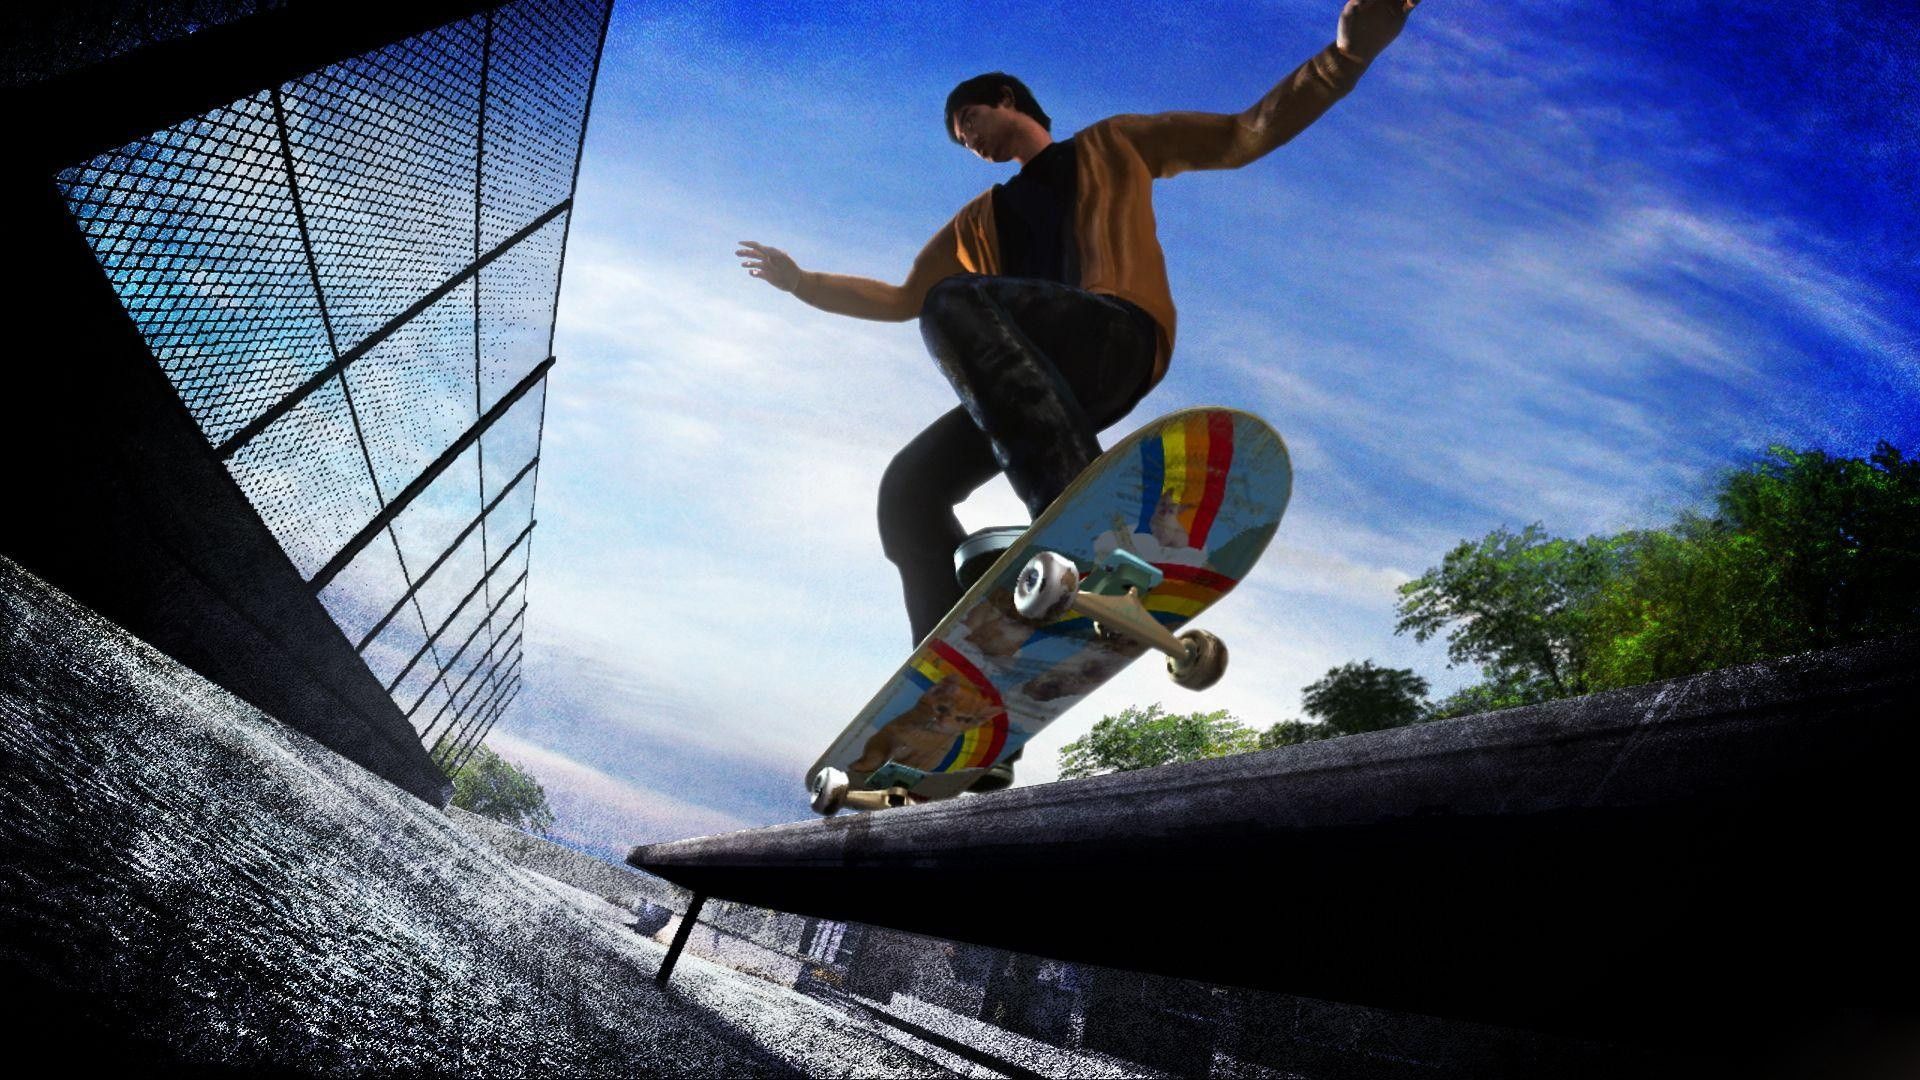 Free Desktop Skateboard Wallpaper